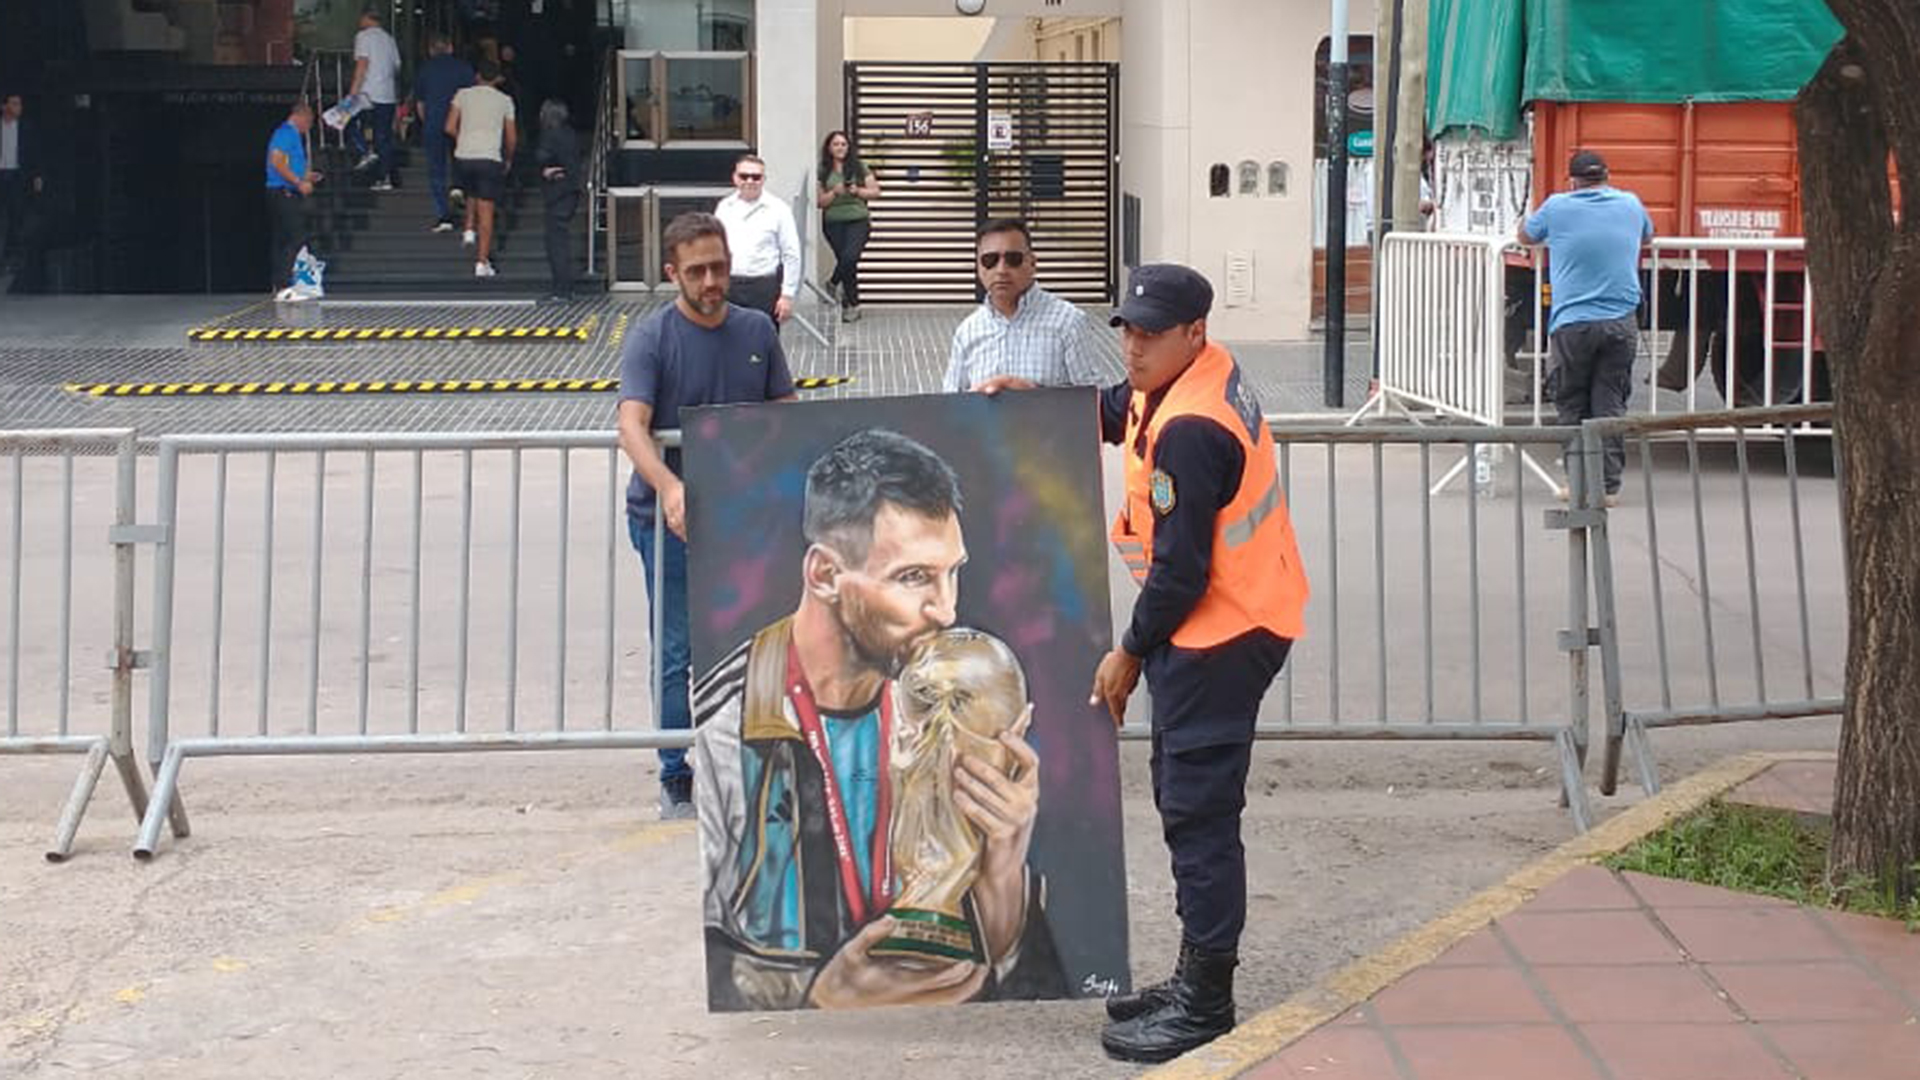 El momento que se llevaban el cuadro para dárselo a Lionel Messi